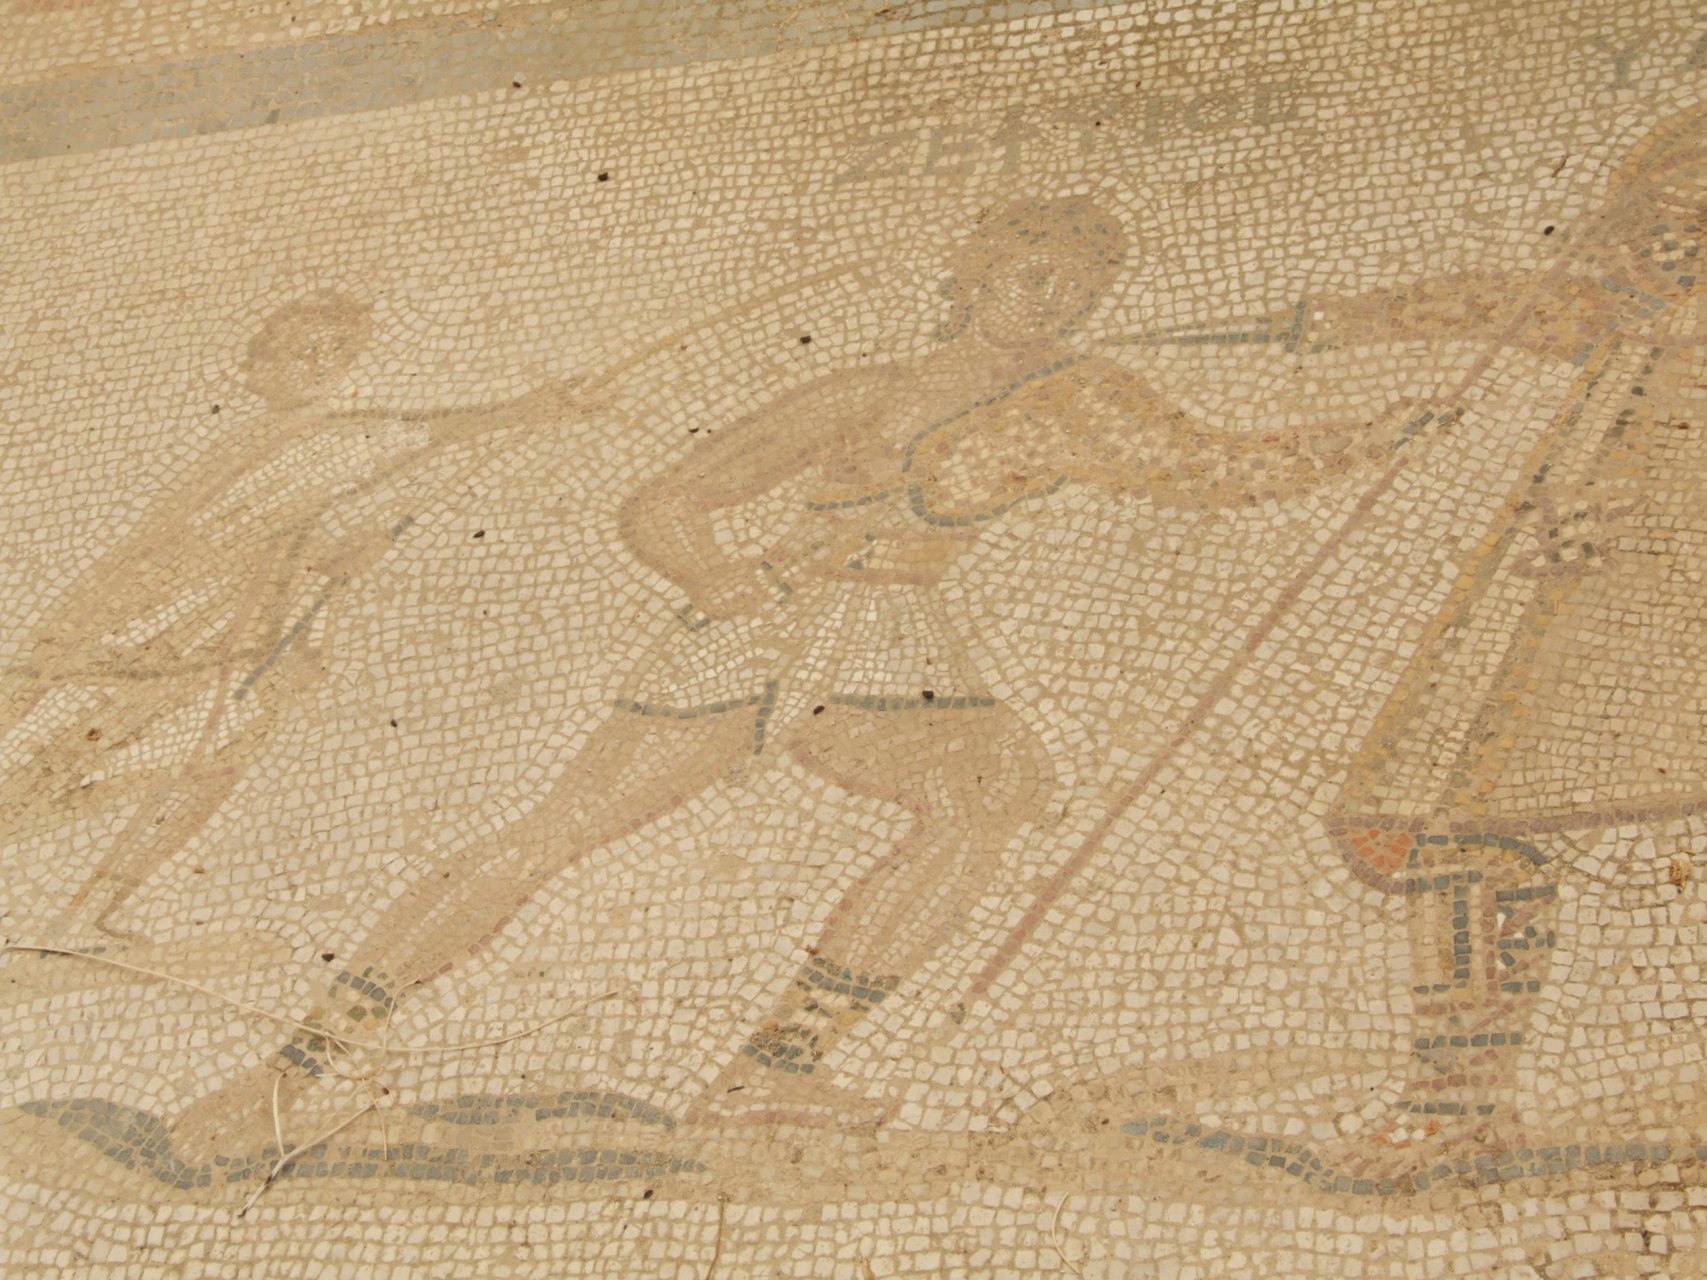 Południowo-wschodnie wykopaliska w Kos - pozostałość rzymskich mozaik podłogowych